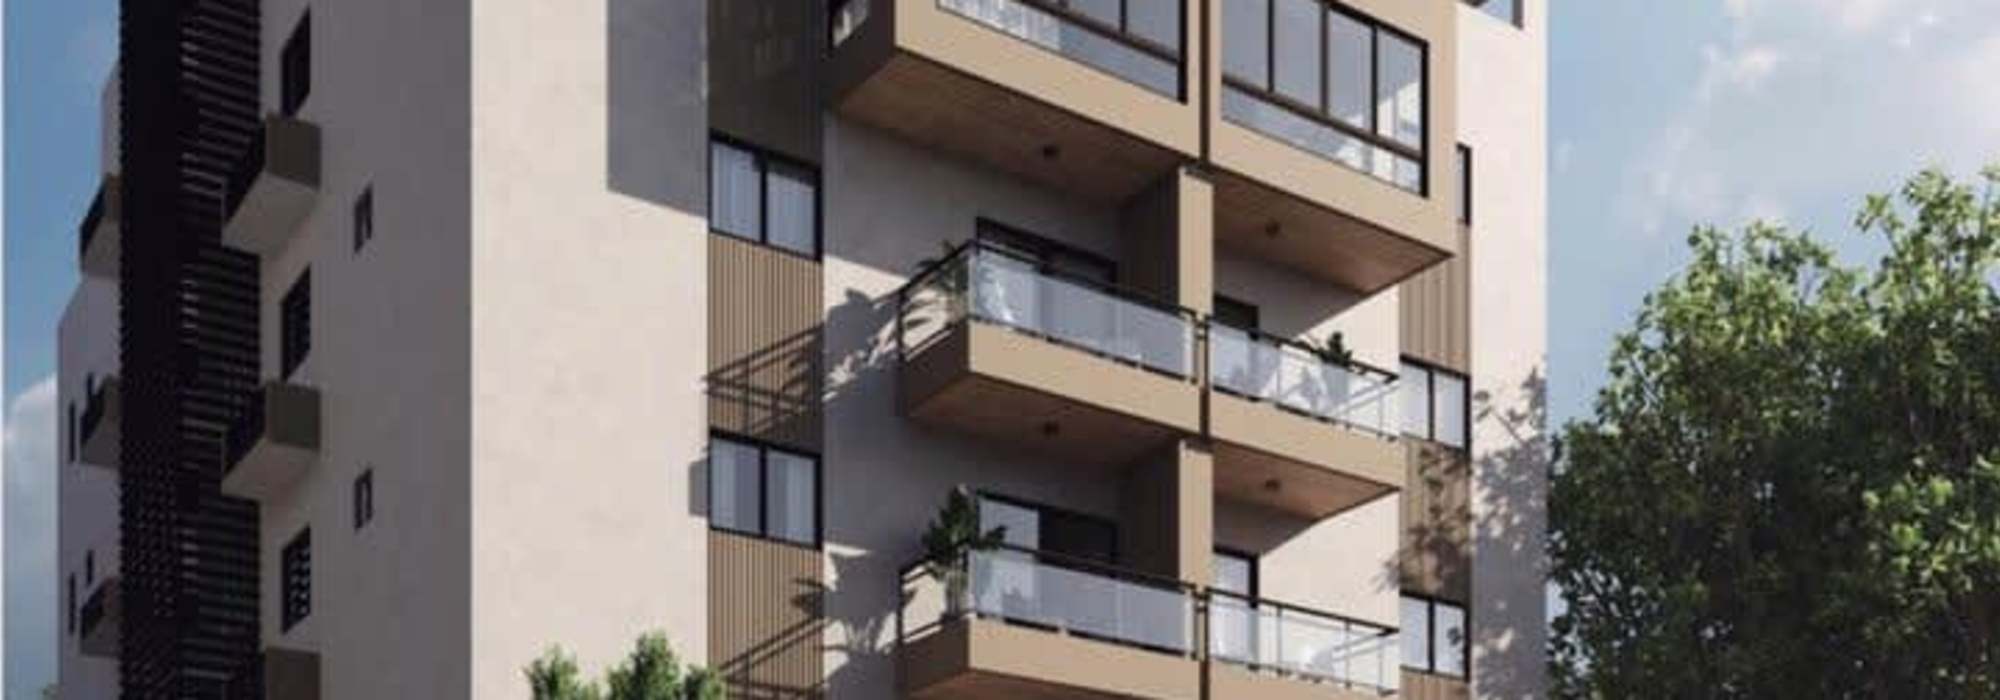 Apartamentos en ventas  en Viejo Arroyo Hondo en Santo Domingo